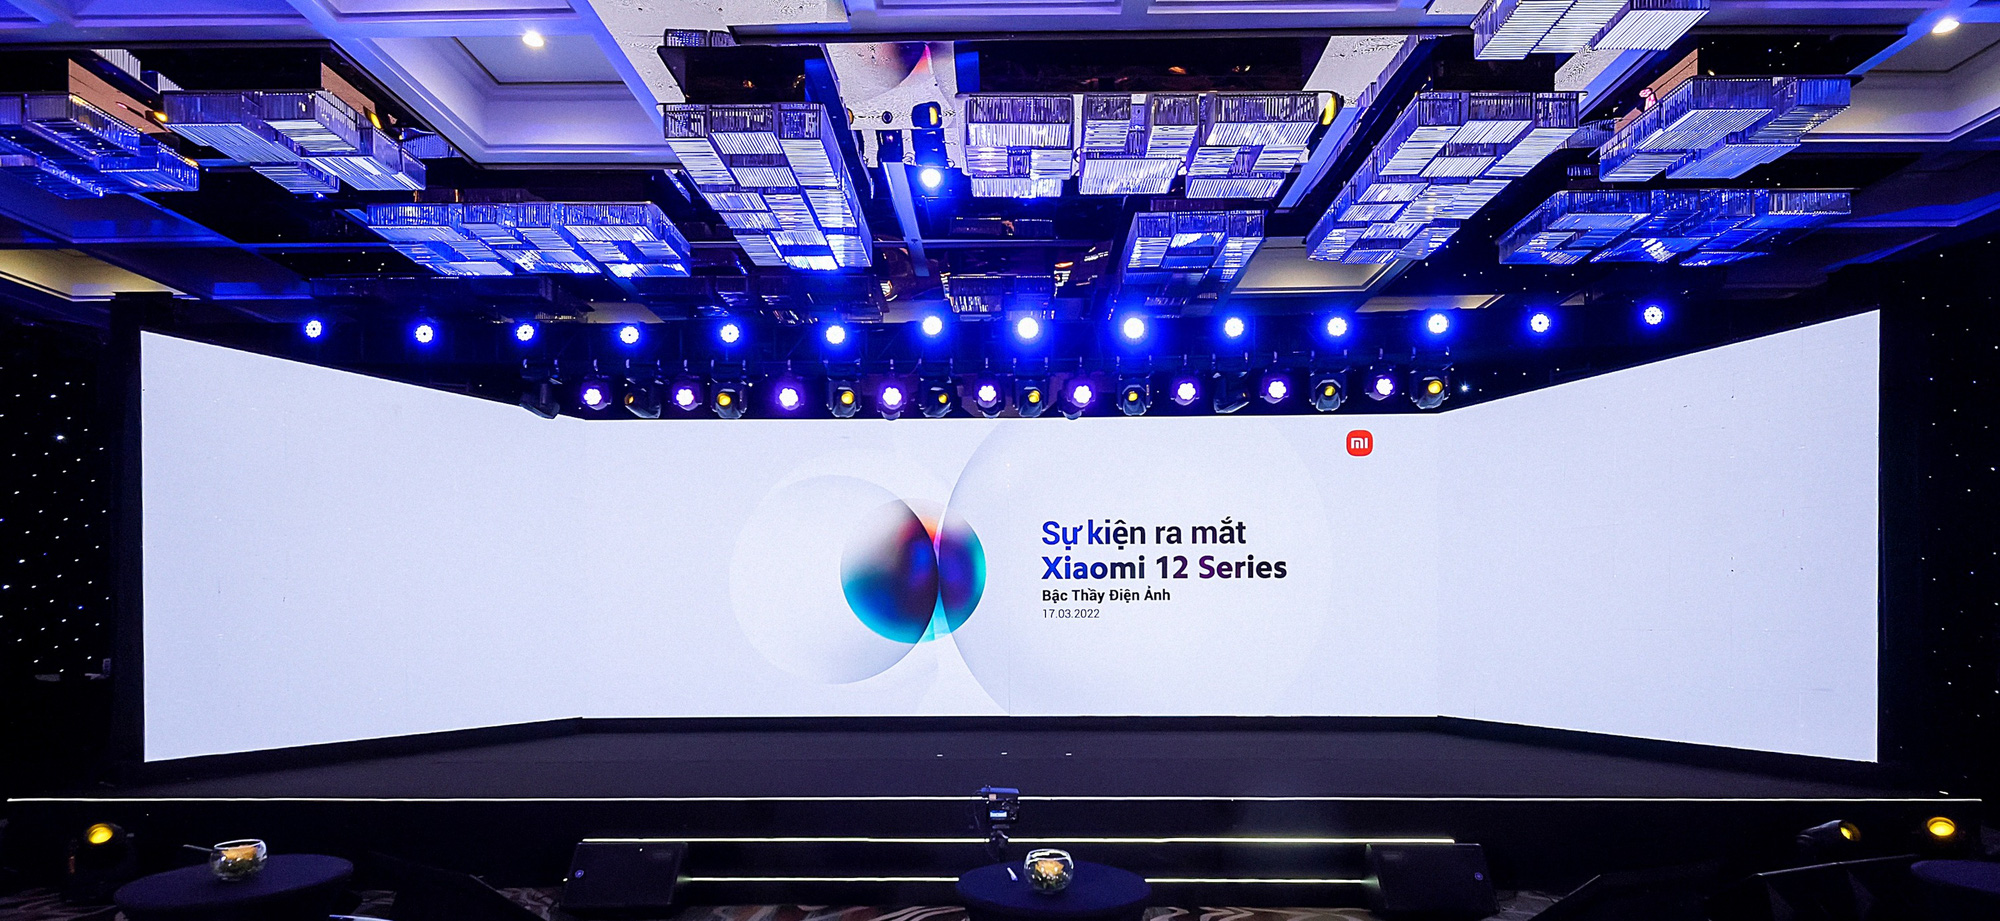  Lần đầu tiên Xiaomi dám bán smartphone giá gần 30 triệu tại VN, liệu có phải ảo giá?  - Ảnh 1.